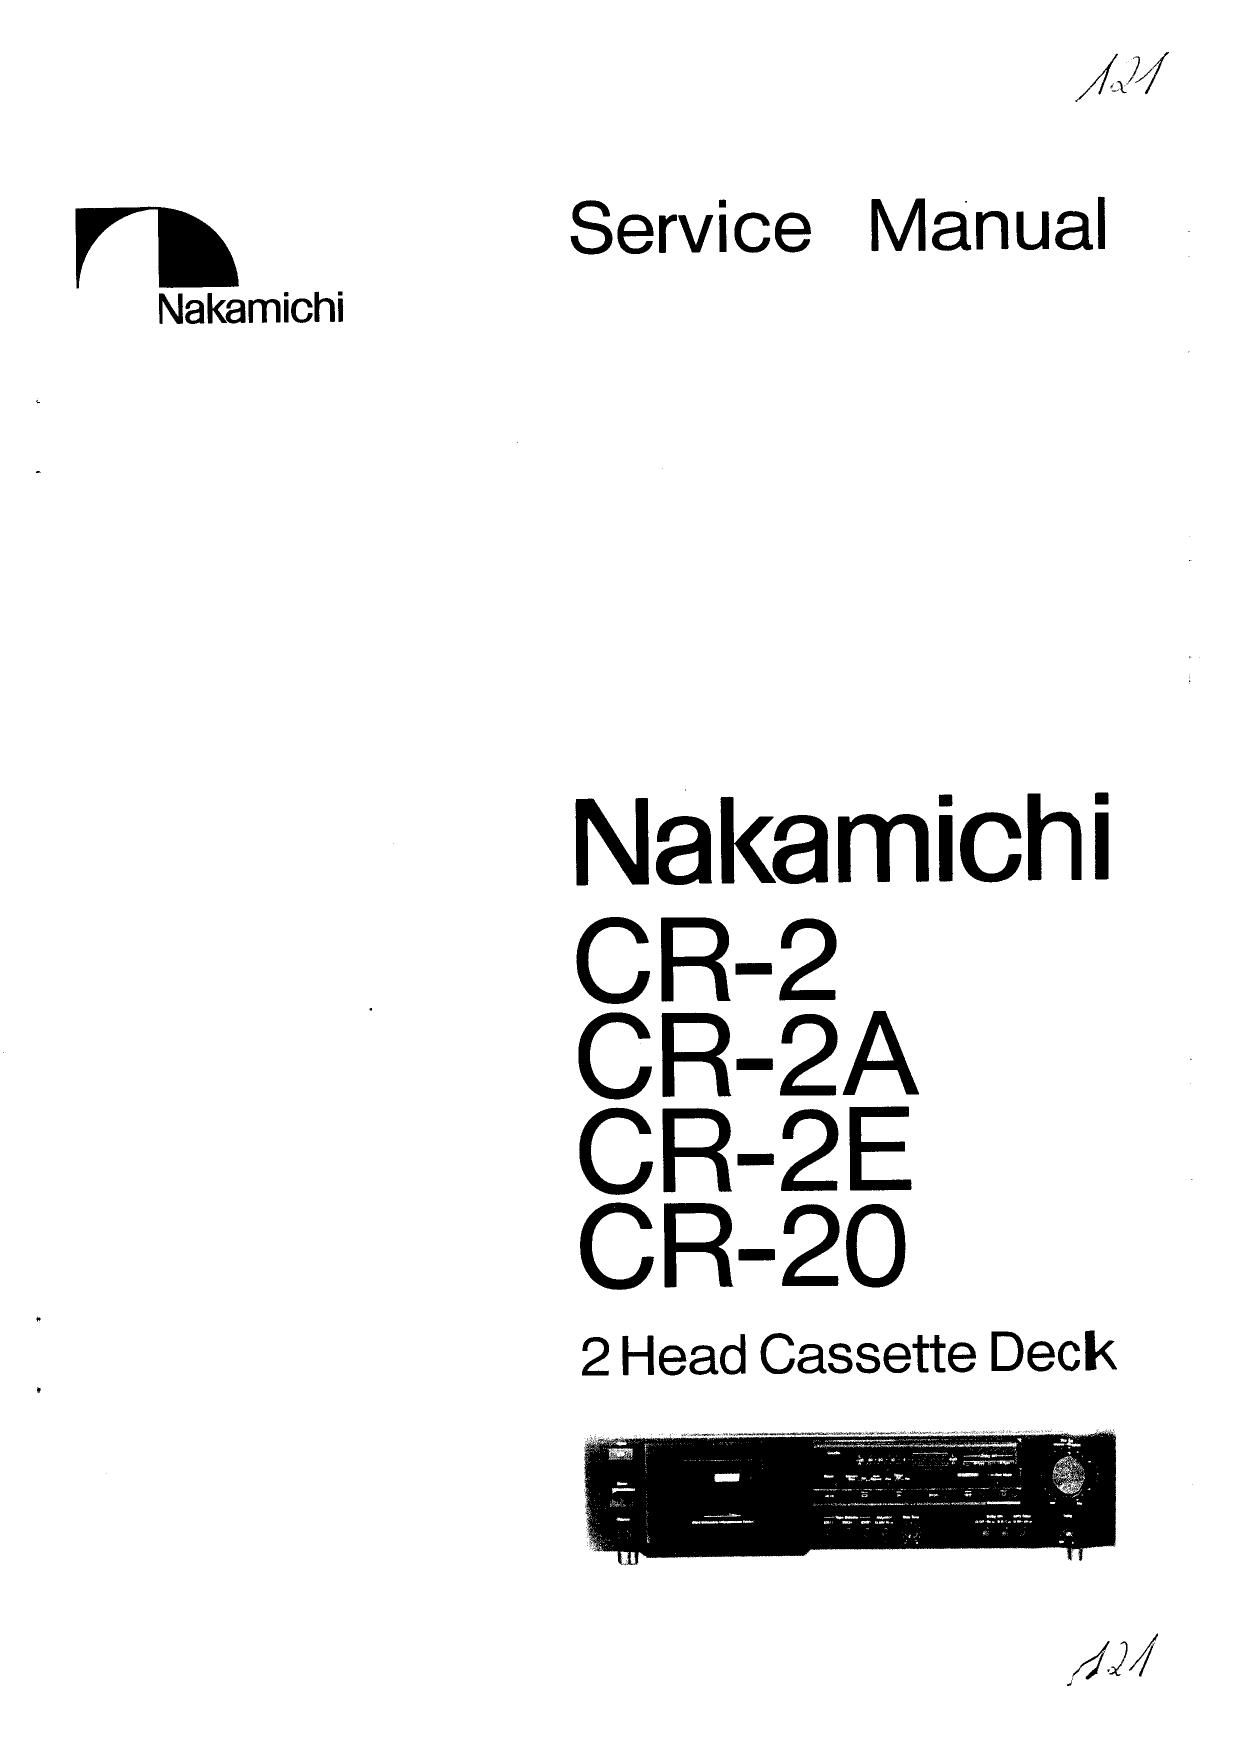 Nakamichi CR 2 Service Manual